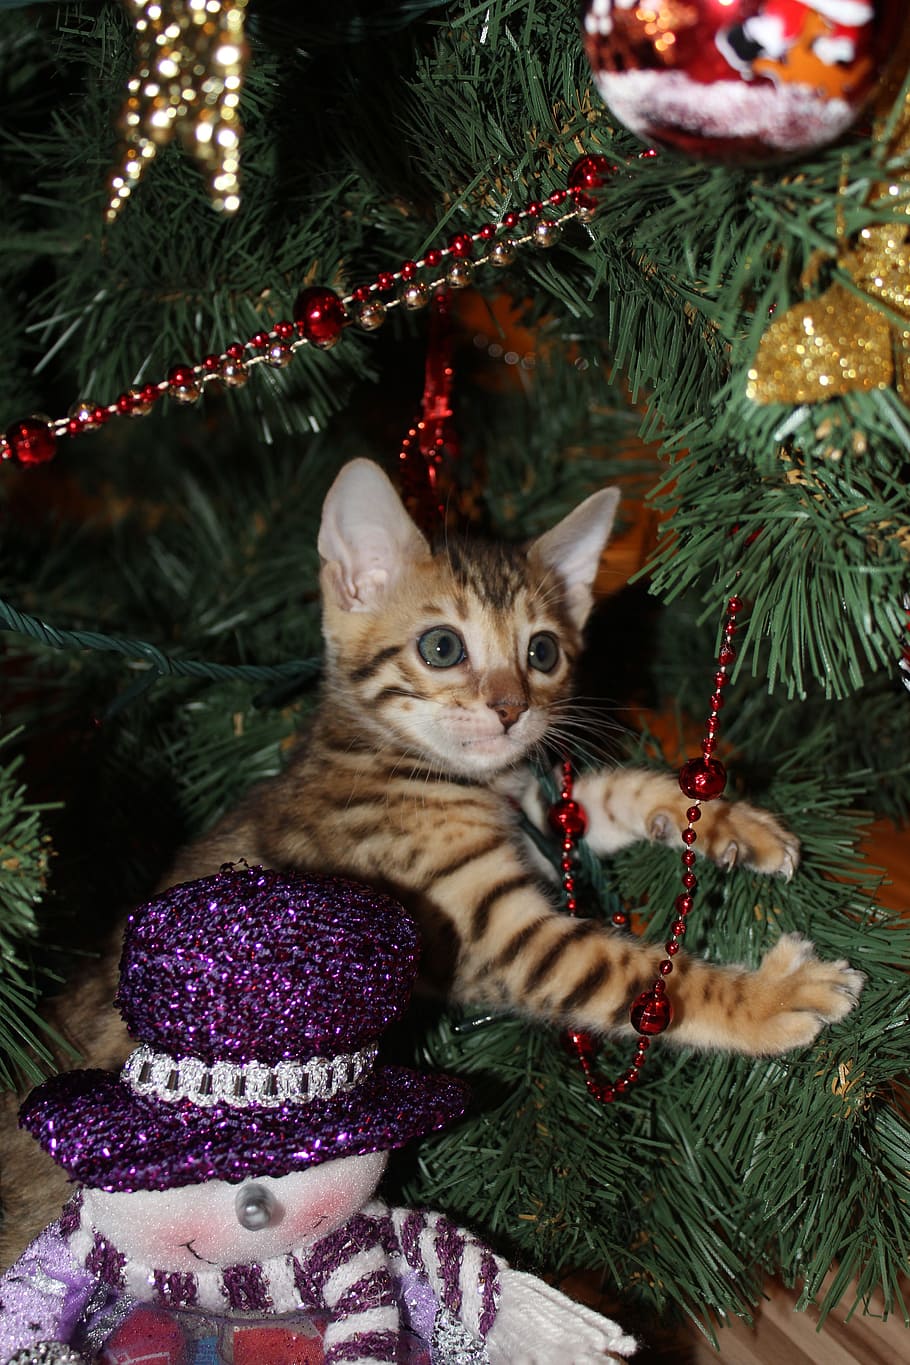 ブラウン, タビー, クリスマスツリー, 子猫, 大晦日, クリスマス, 休日, 飾り, 冬, クリスマスツリーのおもちゃ